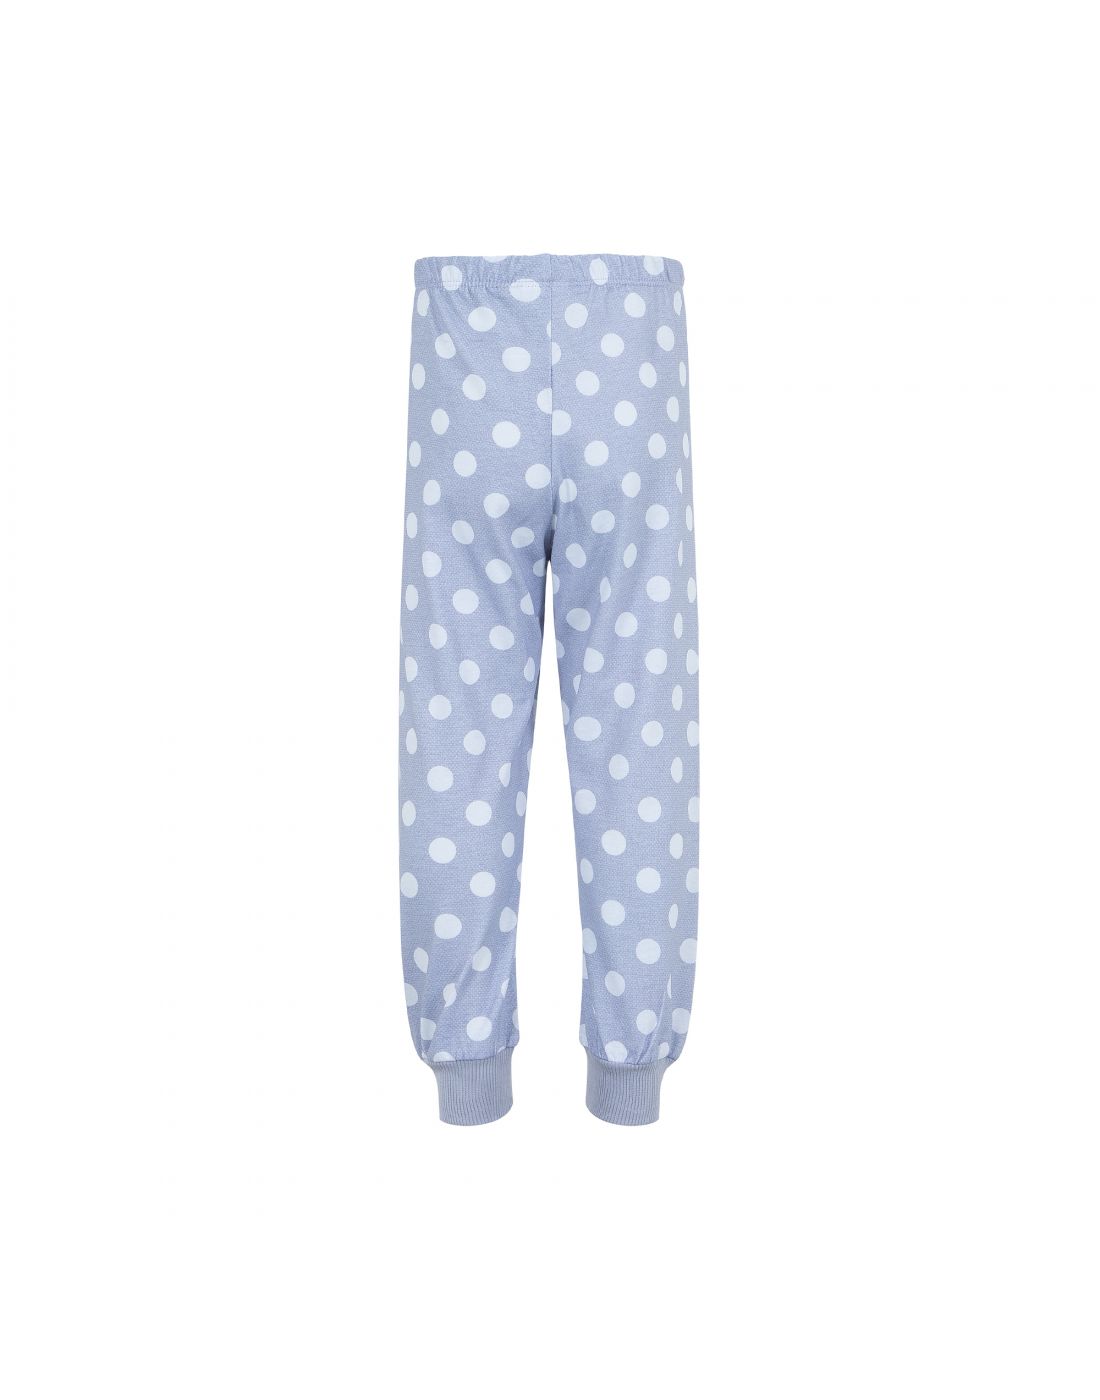 Lapin House Baby Set  Pajamas